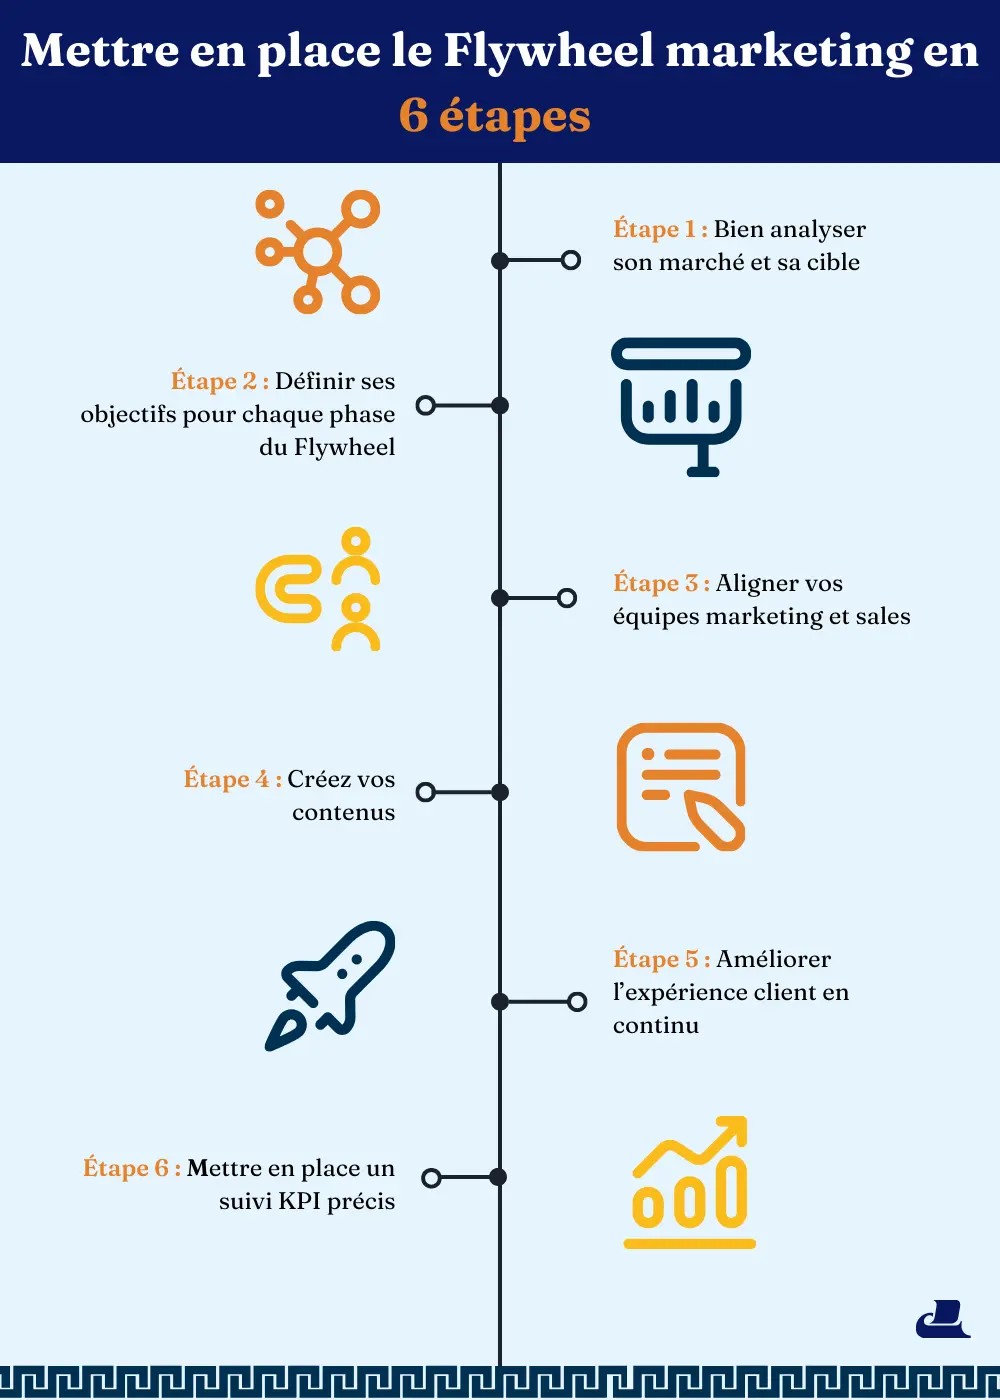 Les 6 étapes du déploiement du flywheel marketing